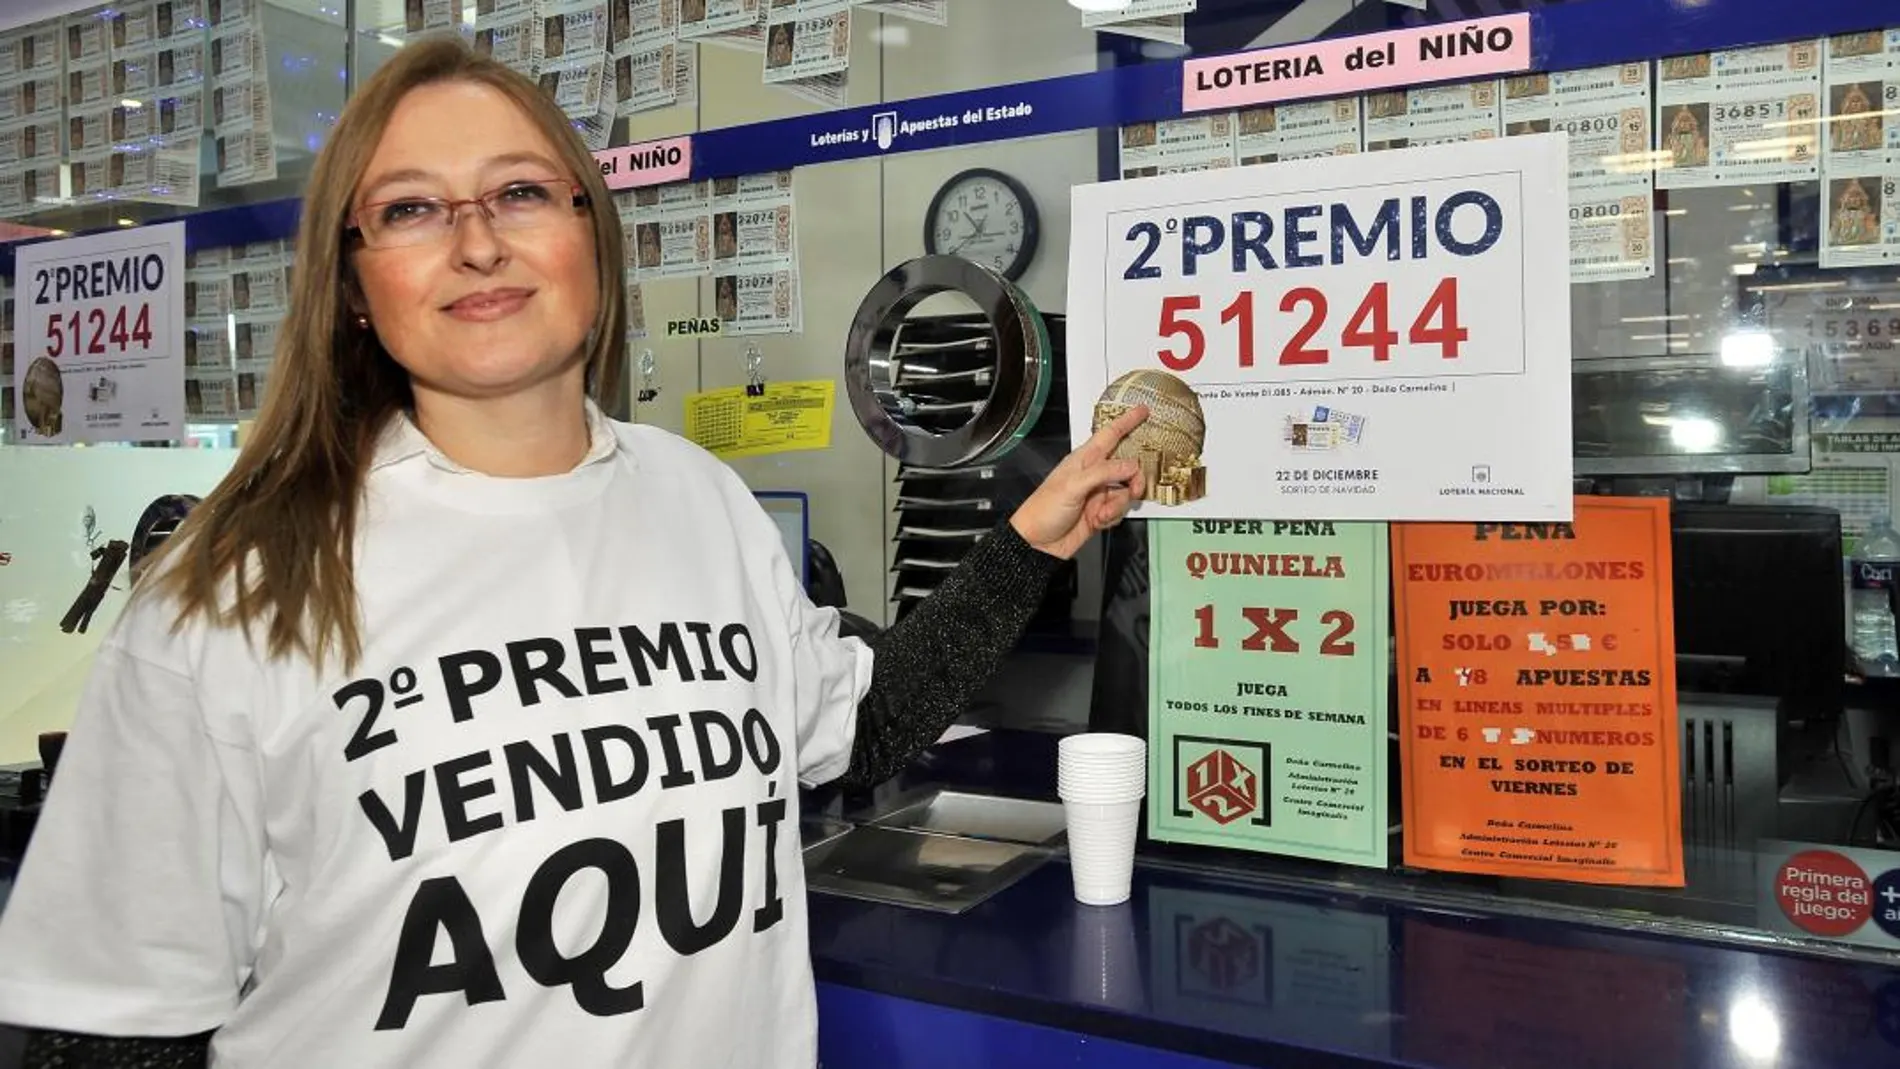 La responsable de la administración nº 20 de Albacete muestra el cartel del segundo premio del Sorteo Extraordinario de la Lotería de Navidad, el 51.244